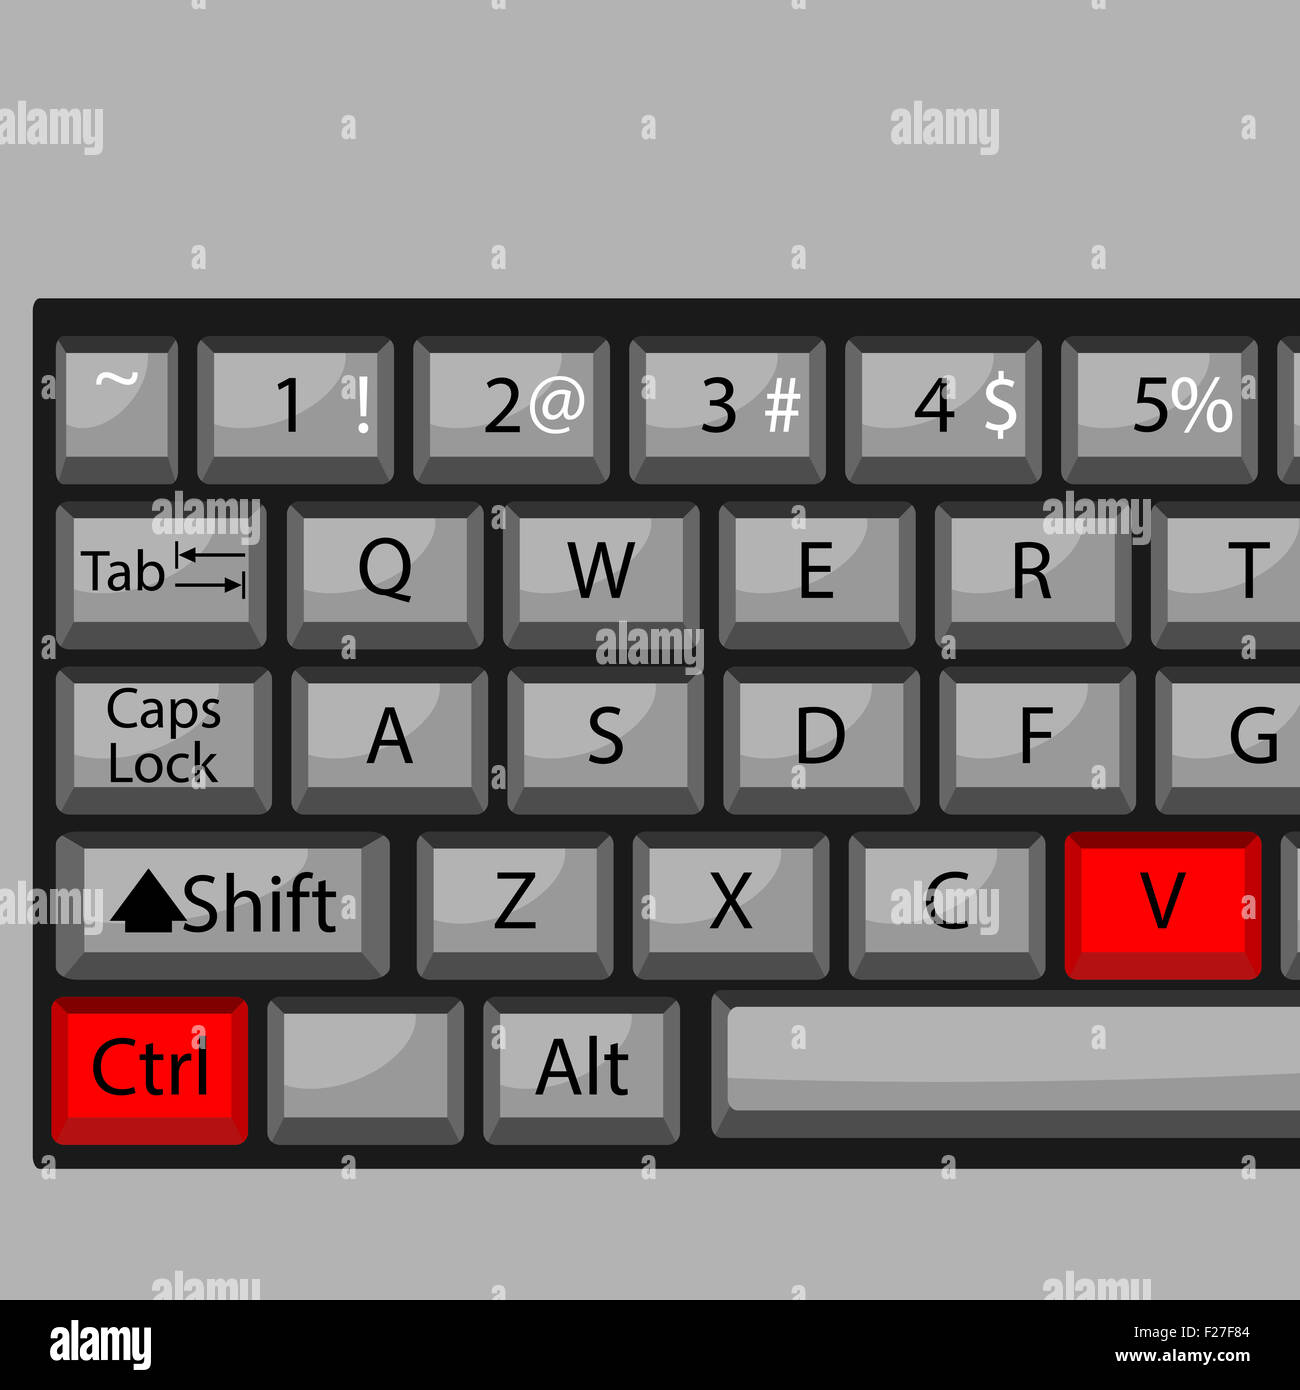 Kombination von Schaltflächen zum Einfügen. Tastatur Strg V,  Combi-Schlüssel, schnell und einfach beherrschen.  Vektor-Grafik-illustration Stockfotografie - Alamy